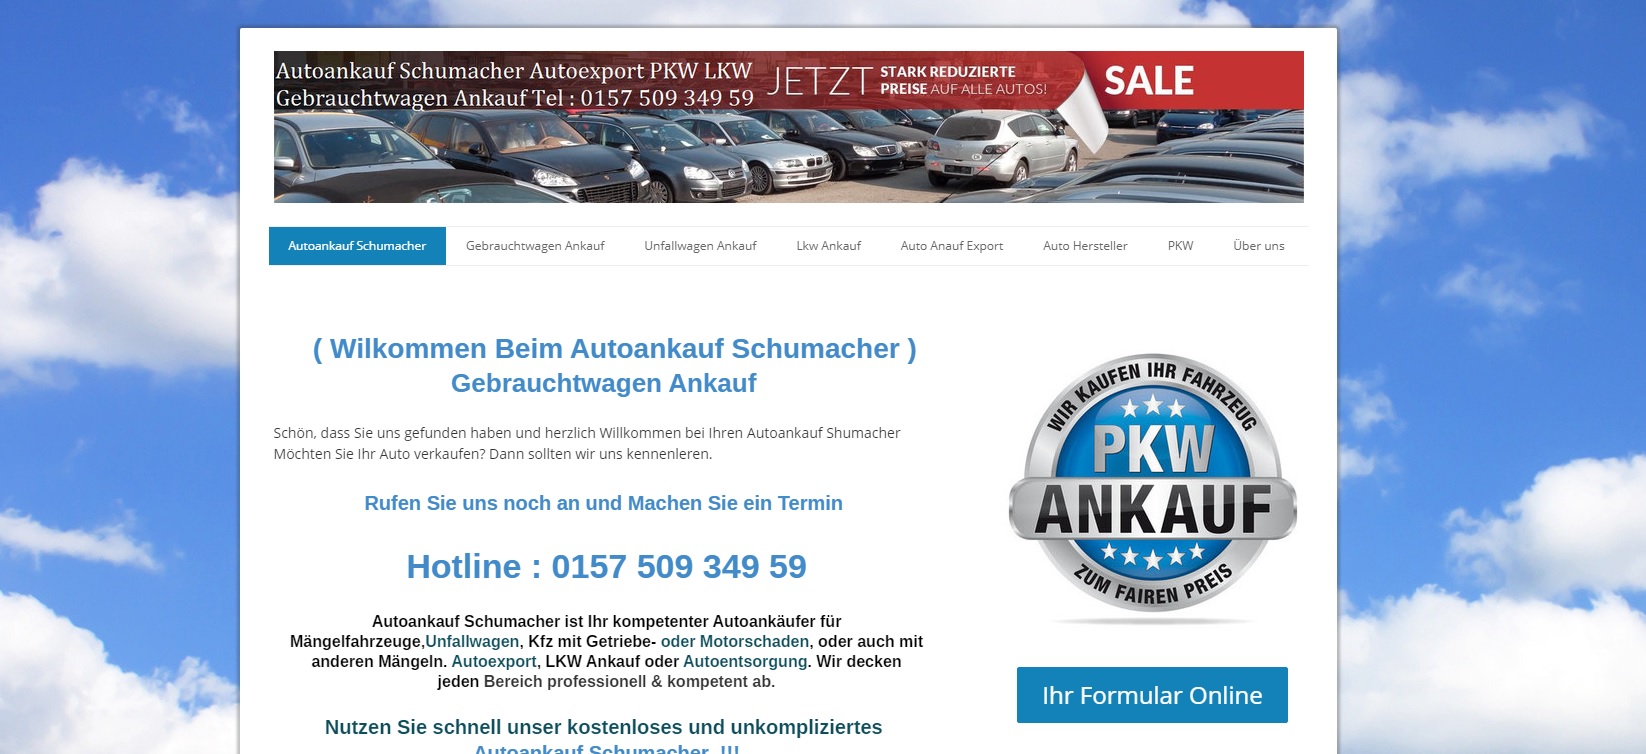 Autoankauf-Schumacher.de ihr Gebrauchtwagenhändler in Jena und Umgebung